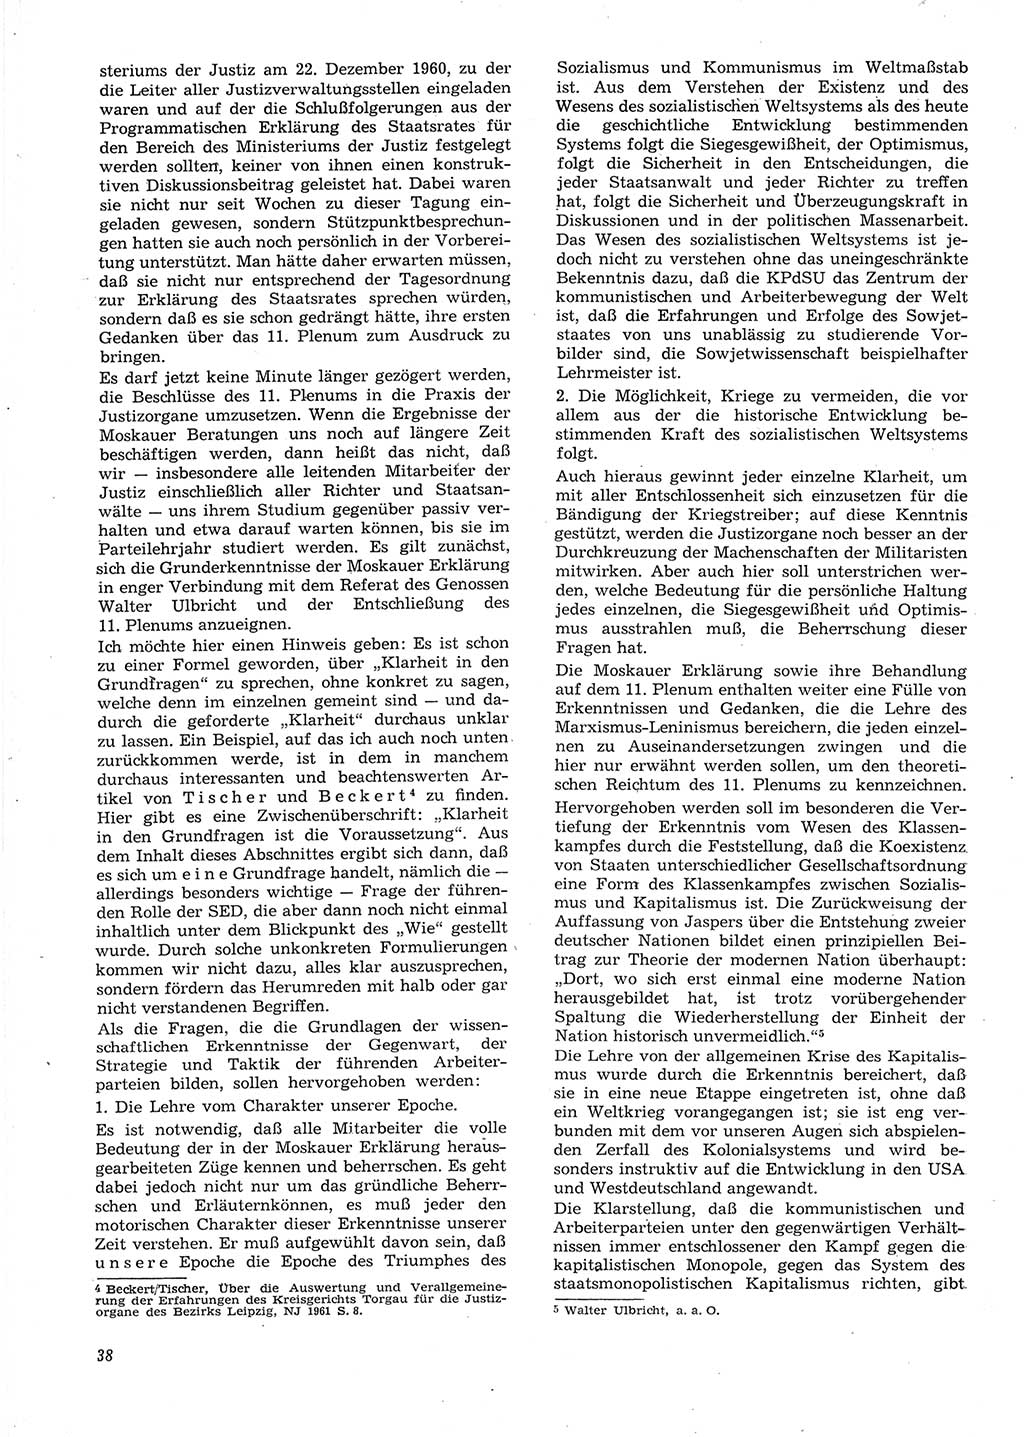 Neue Justiz (NJ), Zeitschrift für Recht und Rechtswissenschaft [Deutsche Demokratische Republik (DDR)], 15. Jahrgang 1961, Seite 38 (NJ DDR 1961, S. 38)